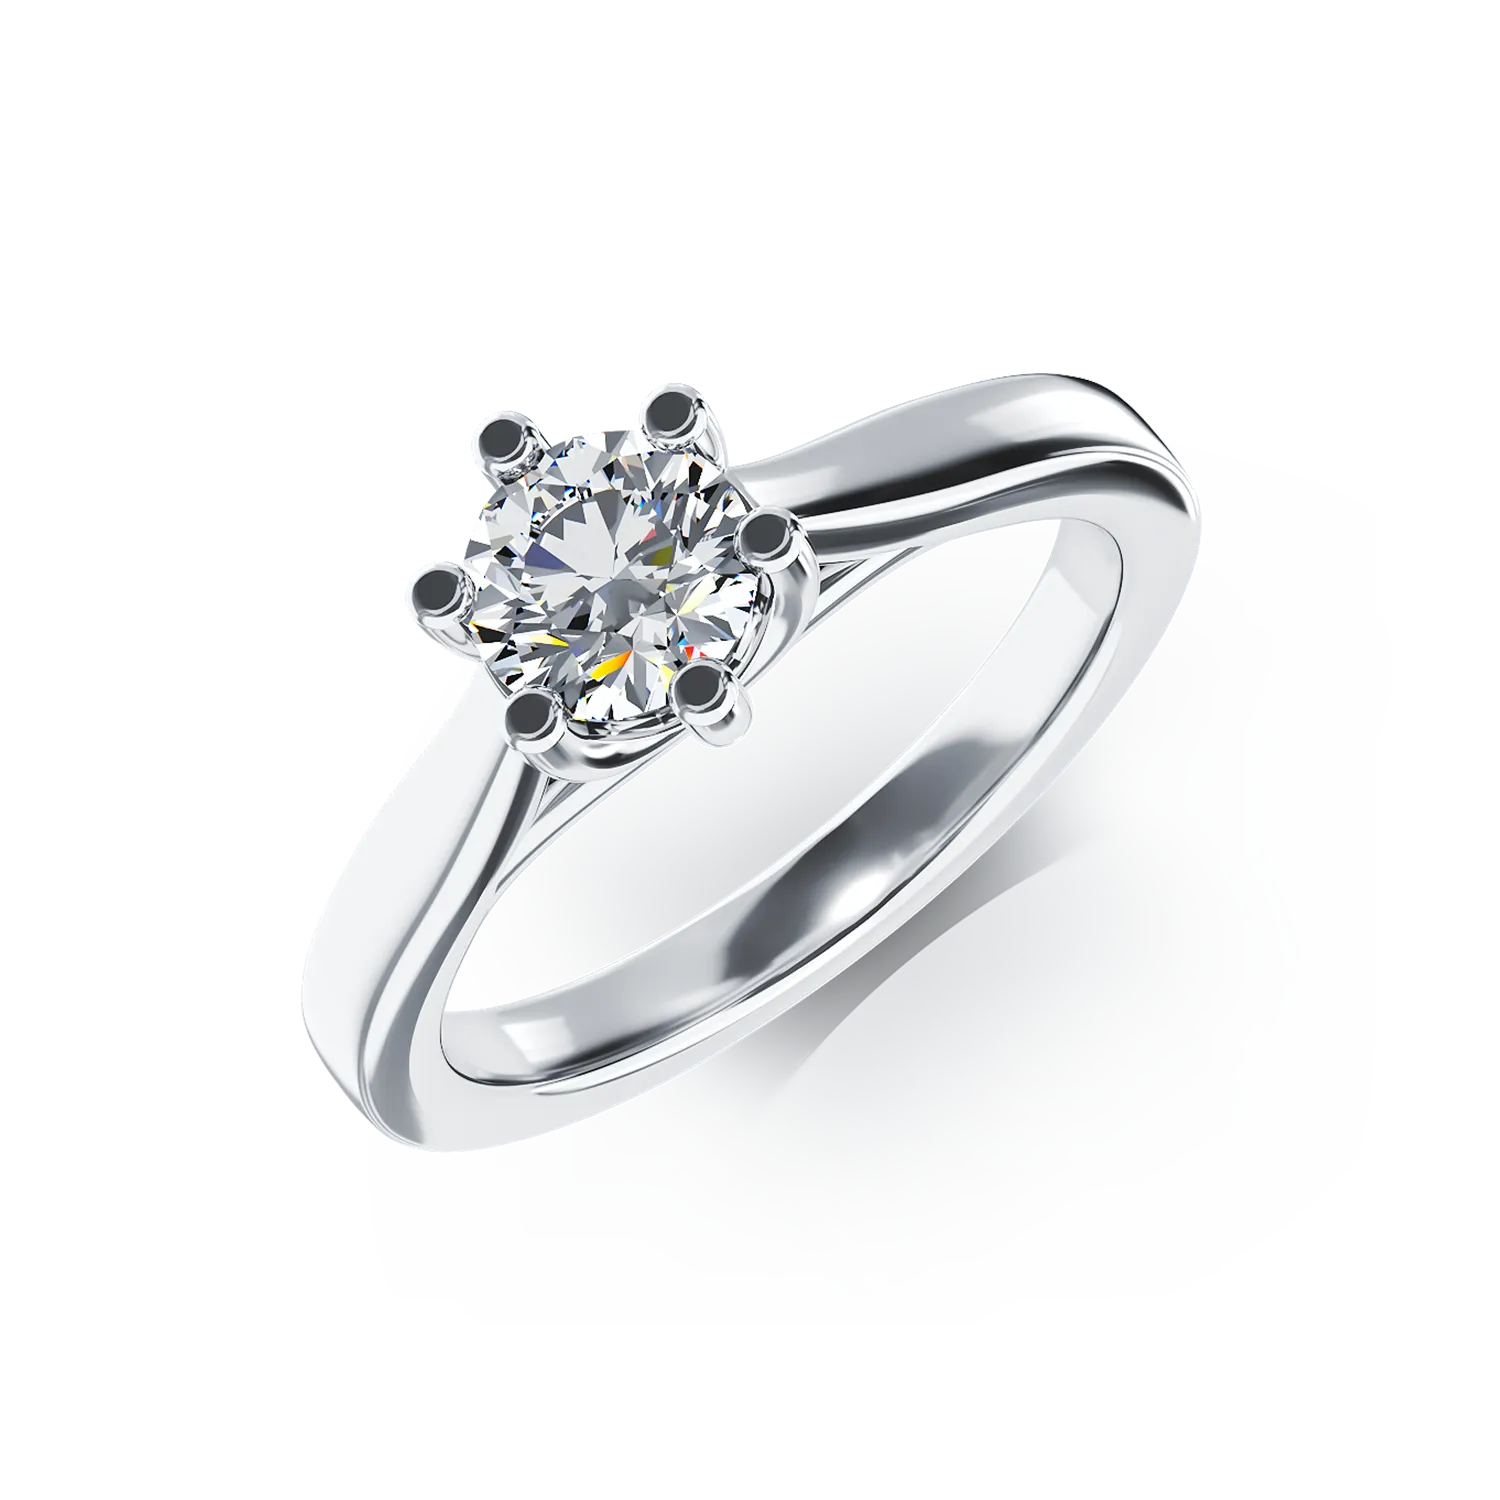 Eljegyzési gyűrű 18K-os fehér aranyból 0,5ct gyémánttal. Gramm: 4,04